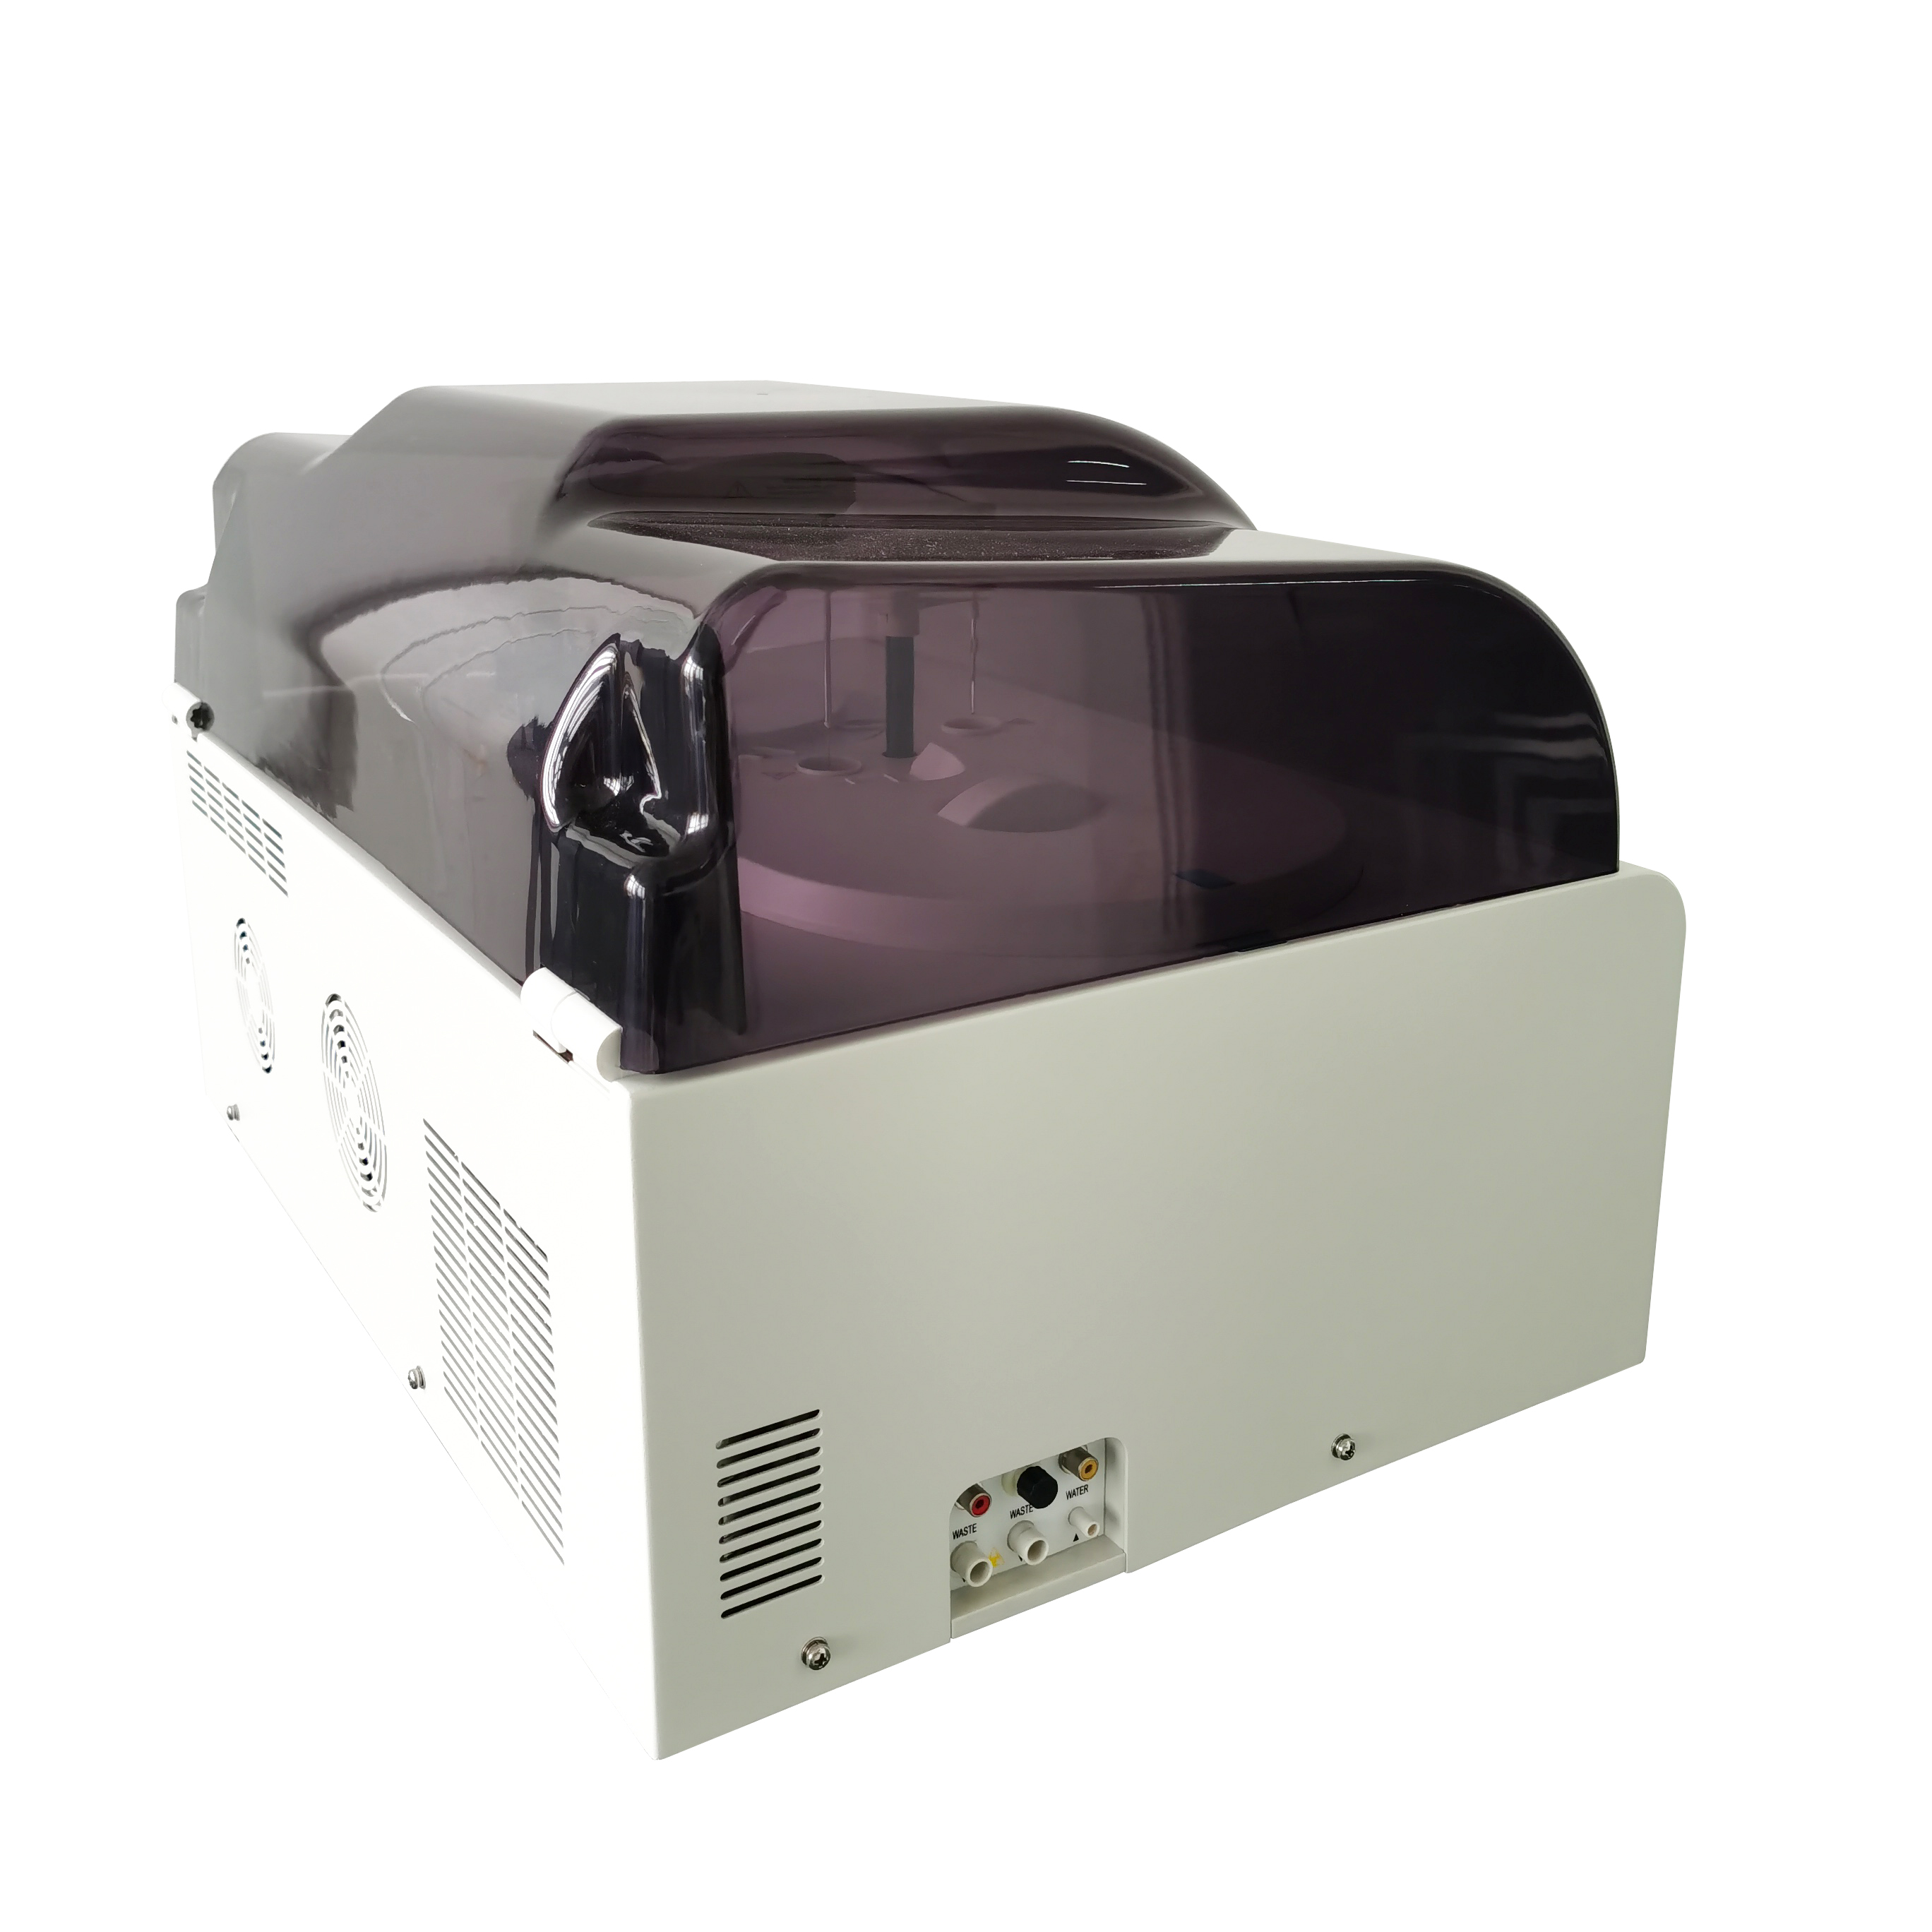 オリジナルイタリアPKL PPC 125自動化学分析装置/オープンシステム自動化学機械